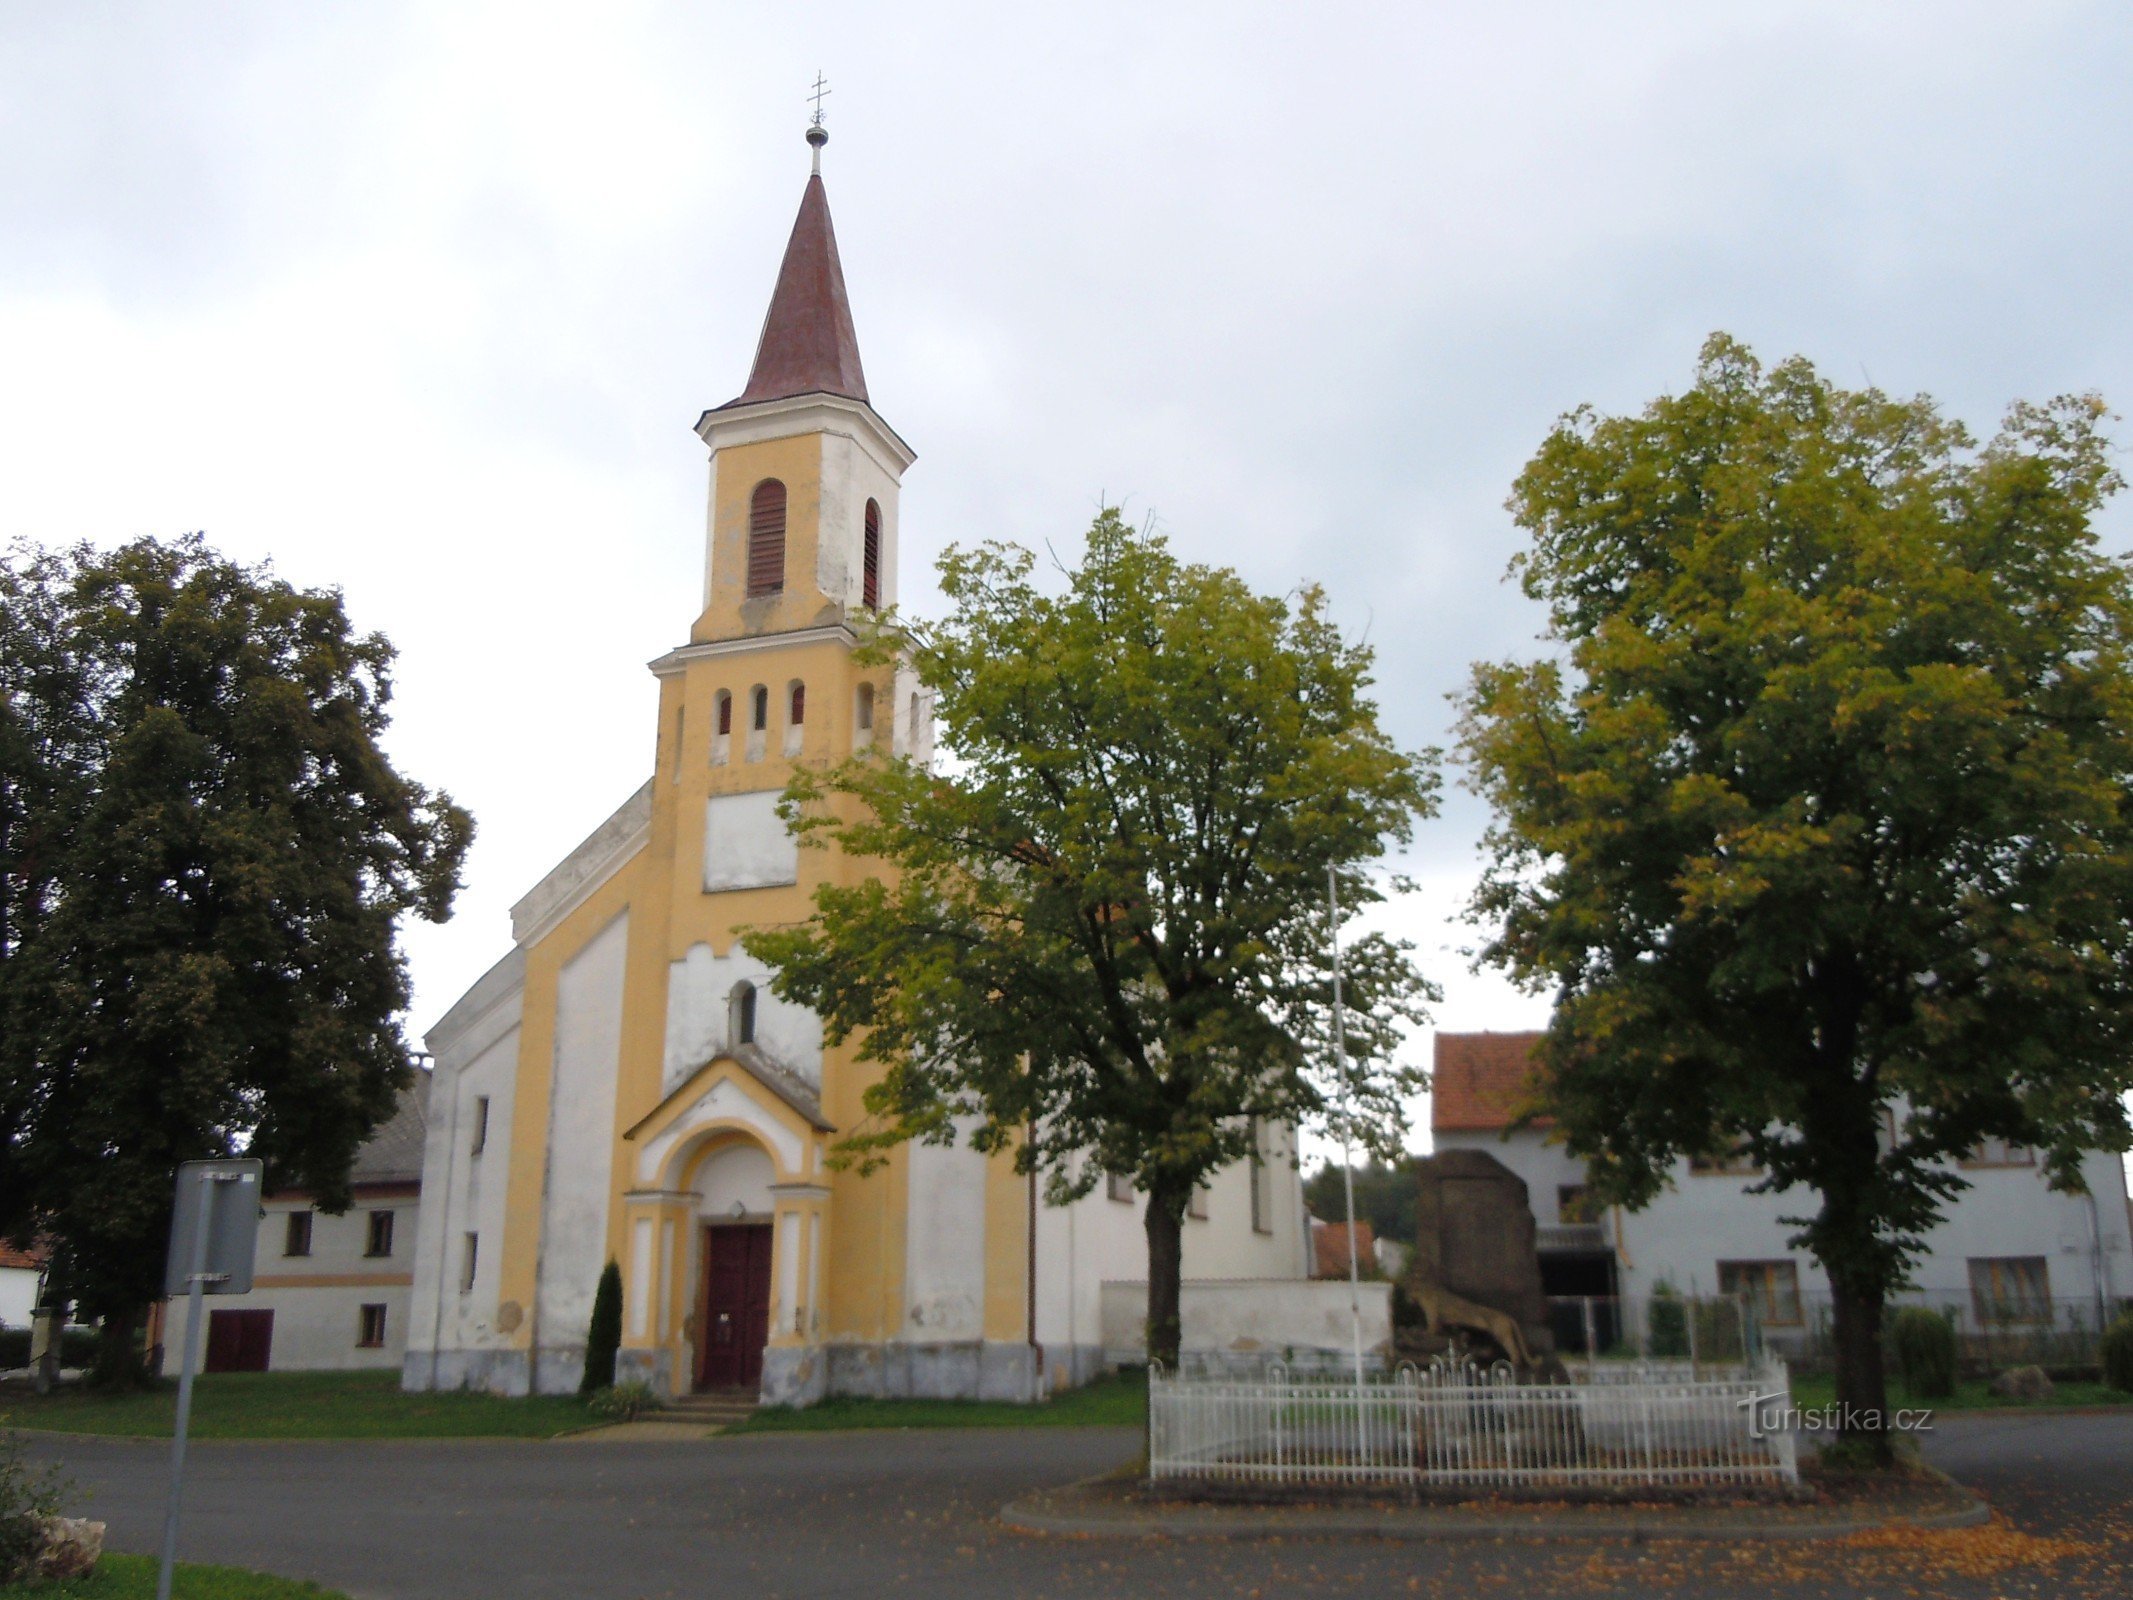 Koloveč - Church of the Annunciation of the Virgin Mary